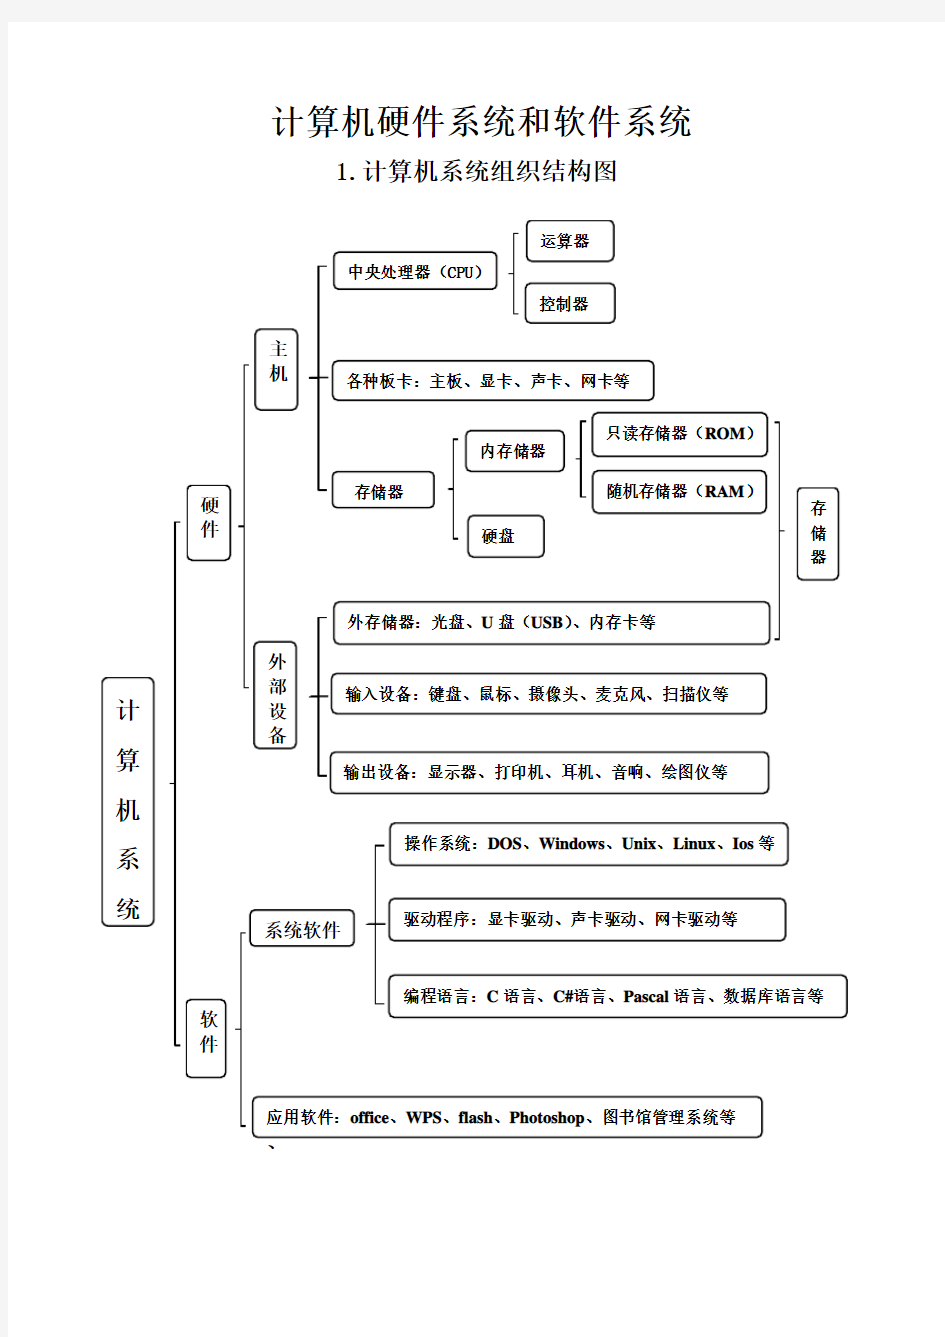 计算机系统的组织结构图